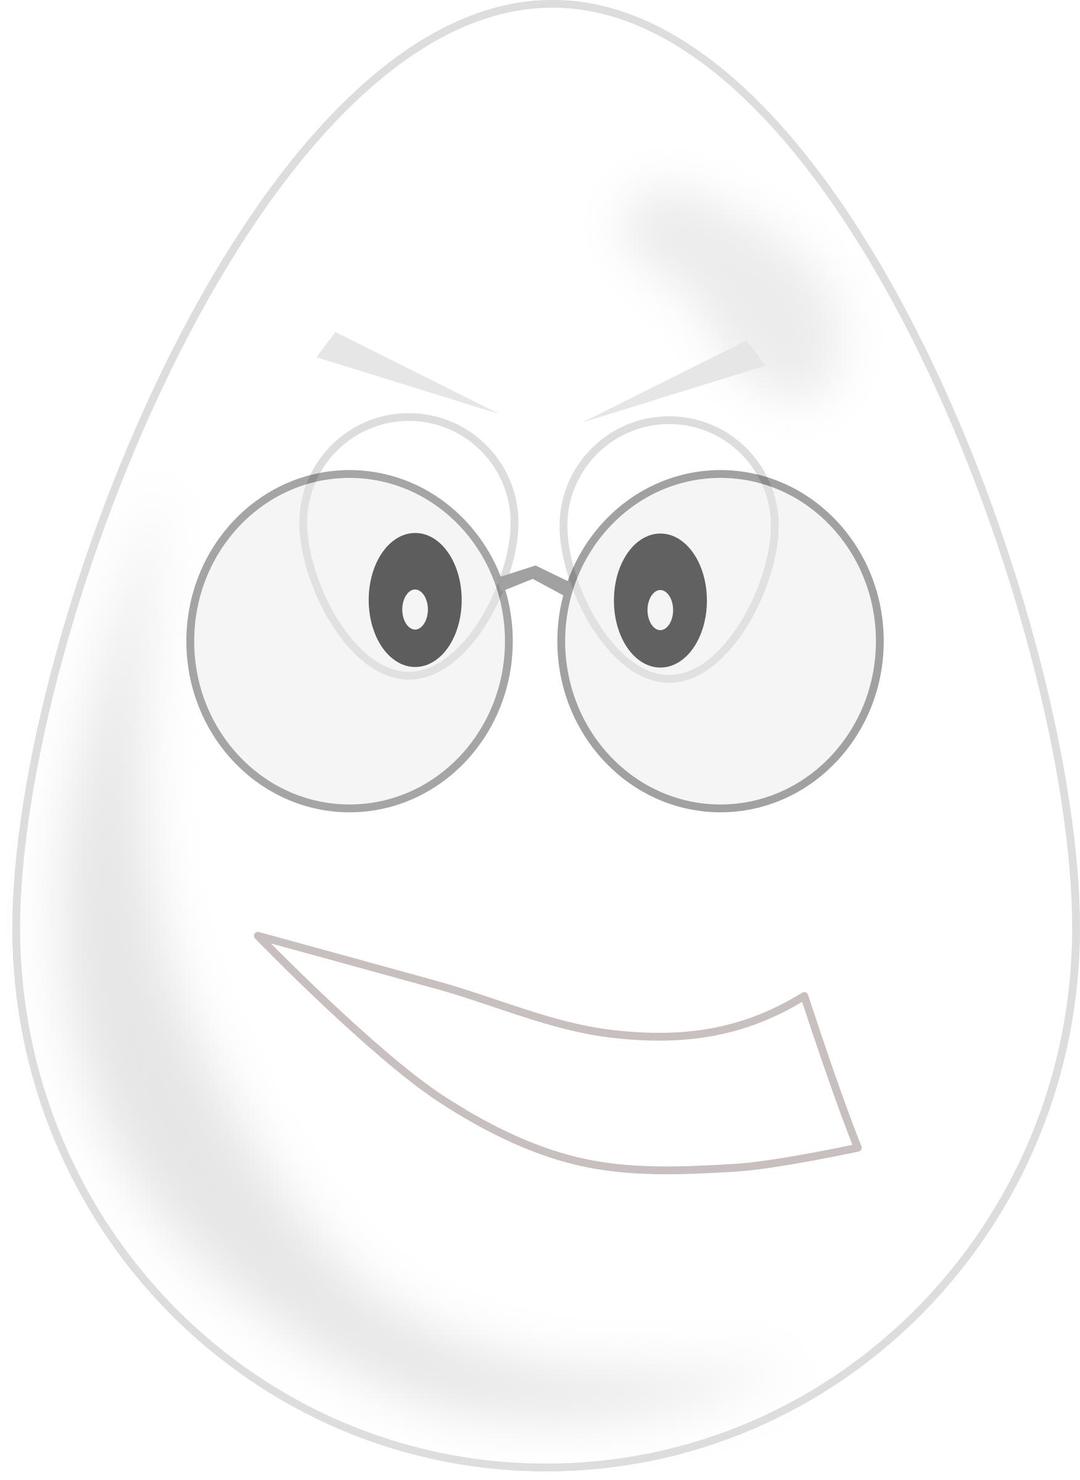 egg wear glasses png transparent